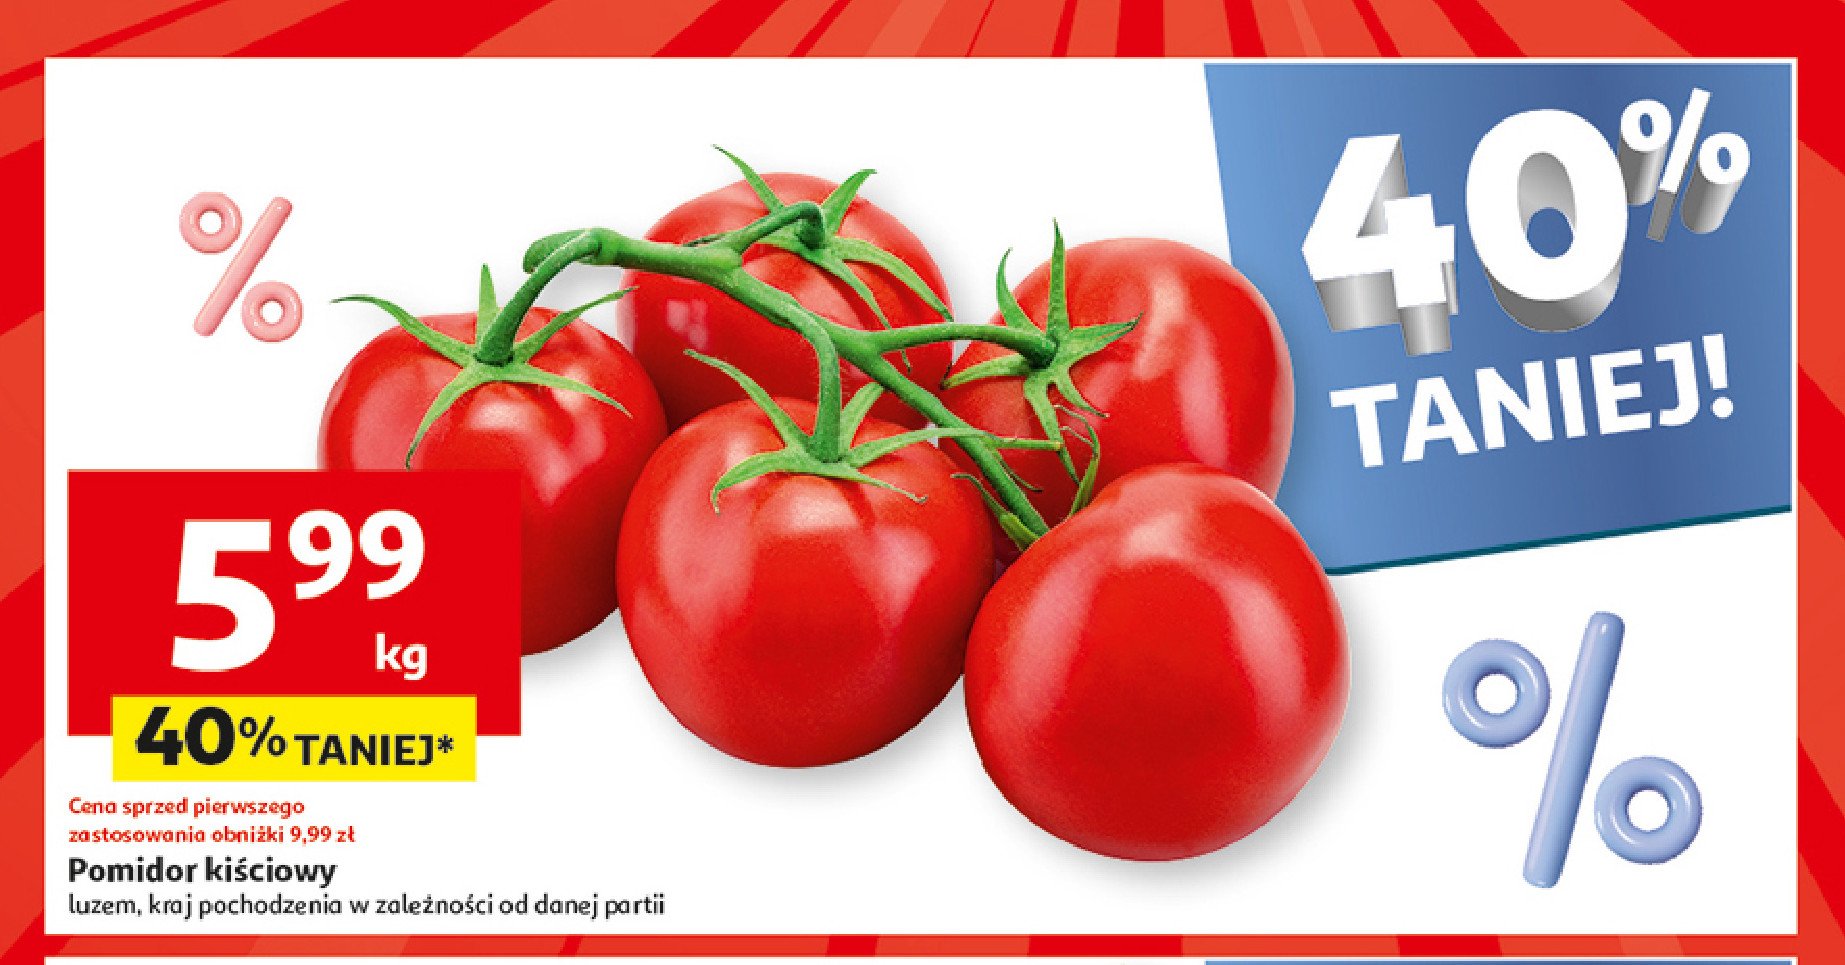 Pomidory kiściowe promocja w Auchan